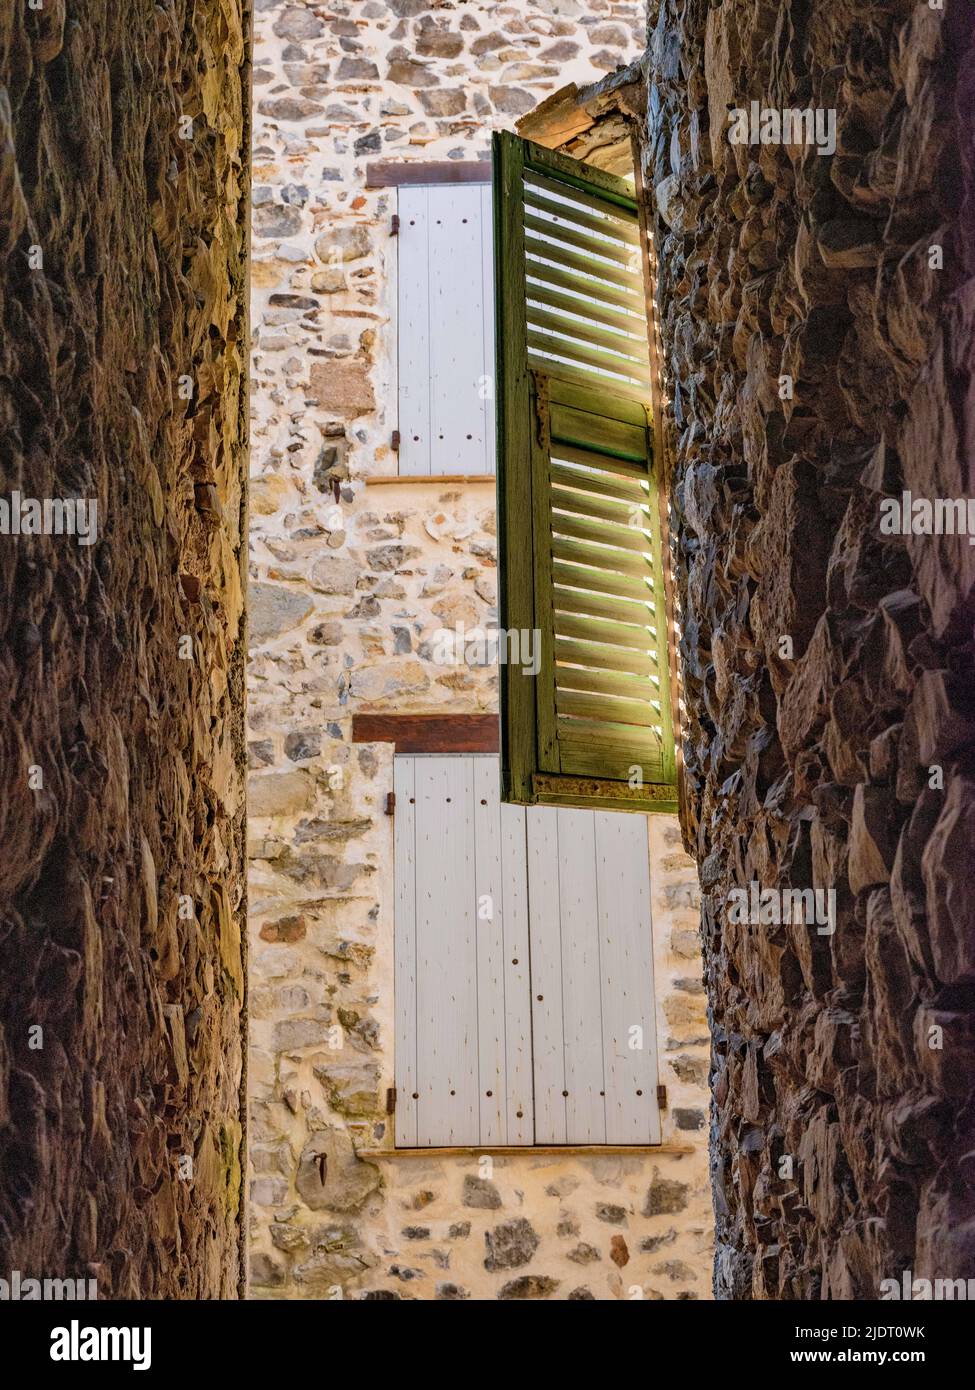 Murs en pierre et vieux volets dans une rue étroite du village provençal de Villars-sur-Var dans les Alpes Maritimes du sud-est de la France Banque D'Images